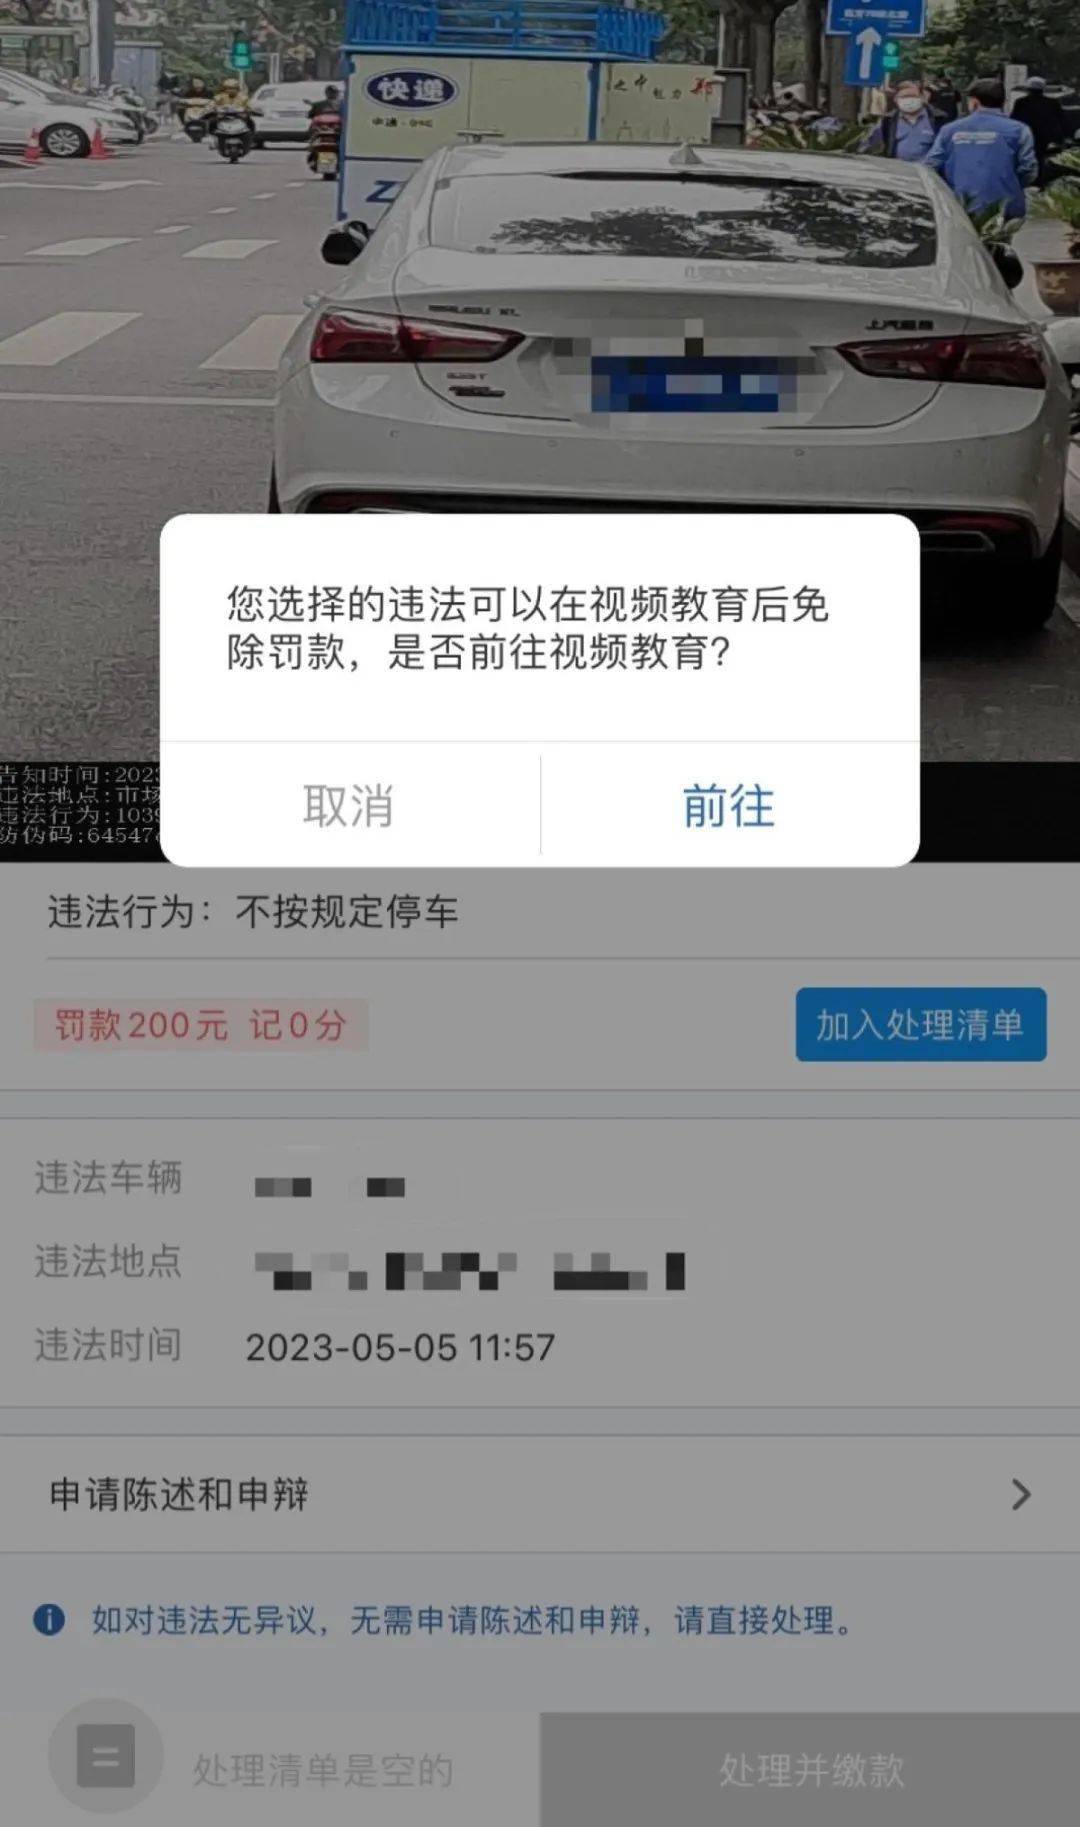 苹果手机越南版6:最新！看30秒视频可免200元罚款？真有这种“好事”?